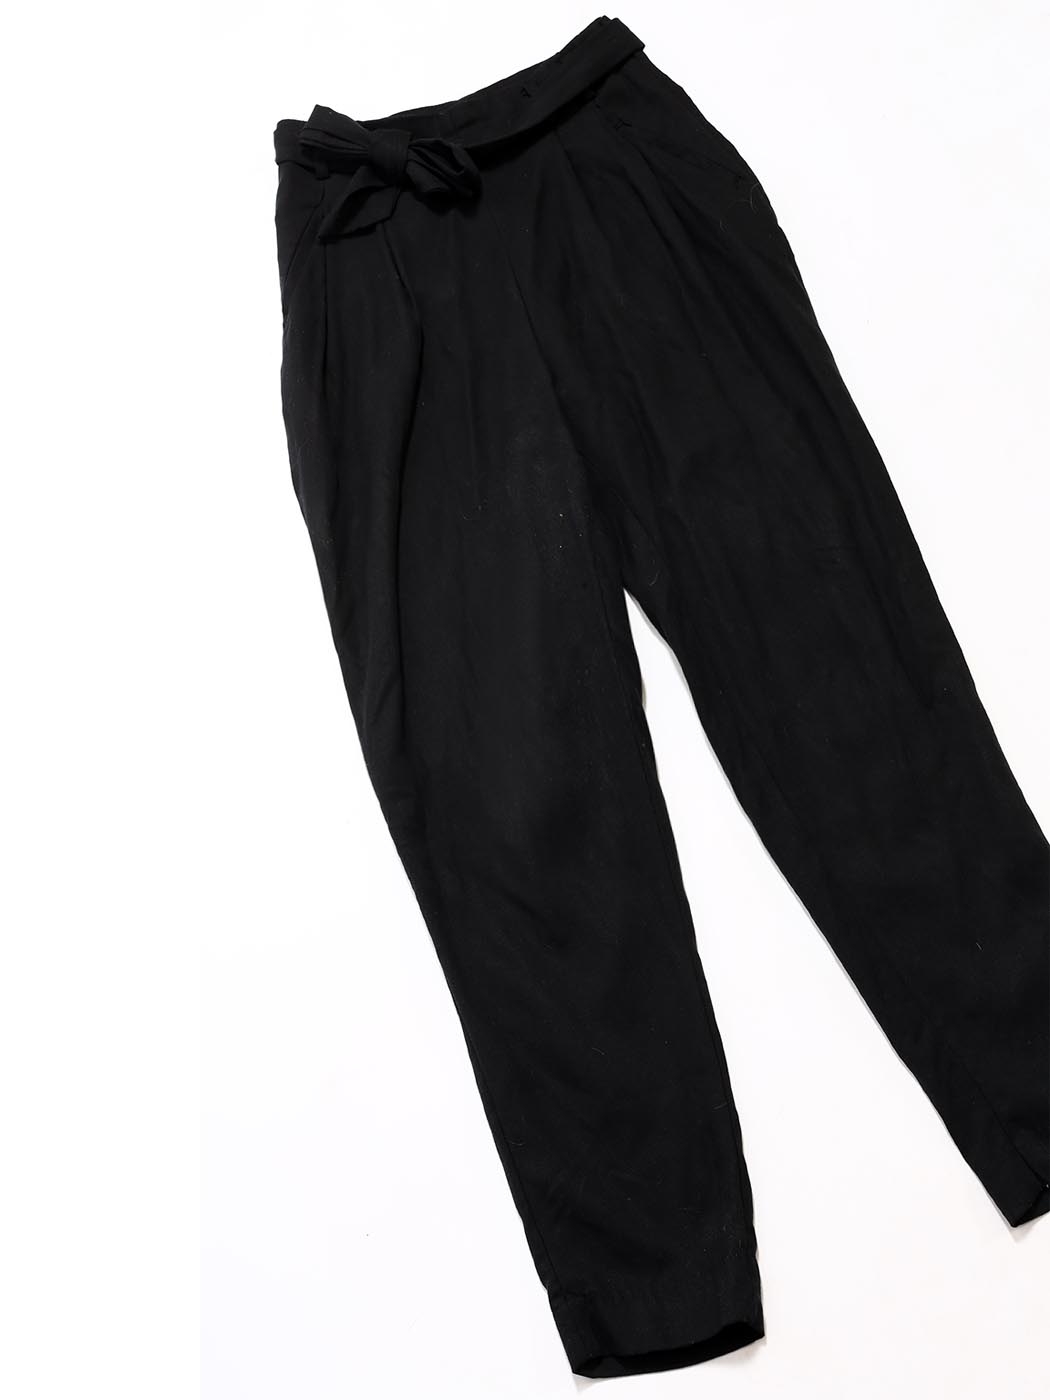 Louise Paris - Black cotton high waist pants with tied belt Size 34